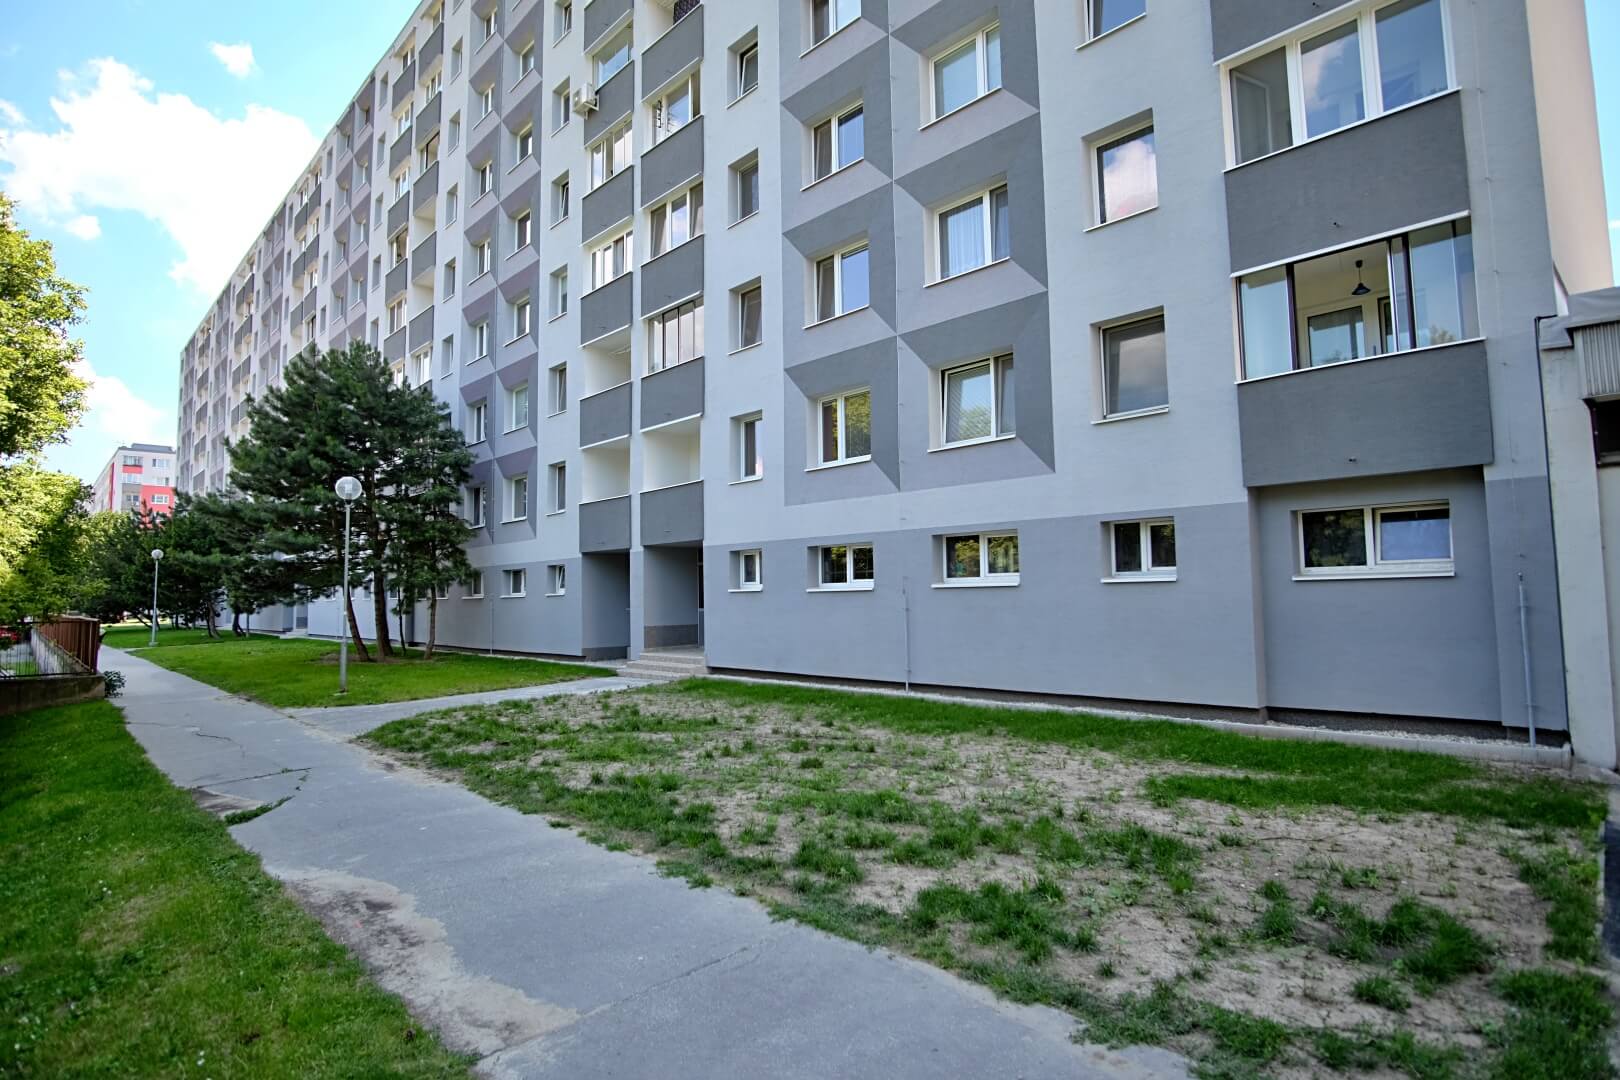 PREDANÉ – Na predaj príjemný 4 izbový byt v lokalite plnej zelene na Vyšehradskej ulici Bratislava- Petržalka.-0